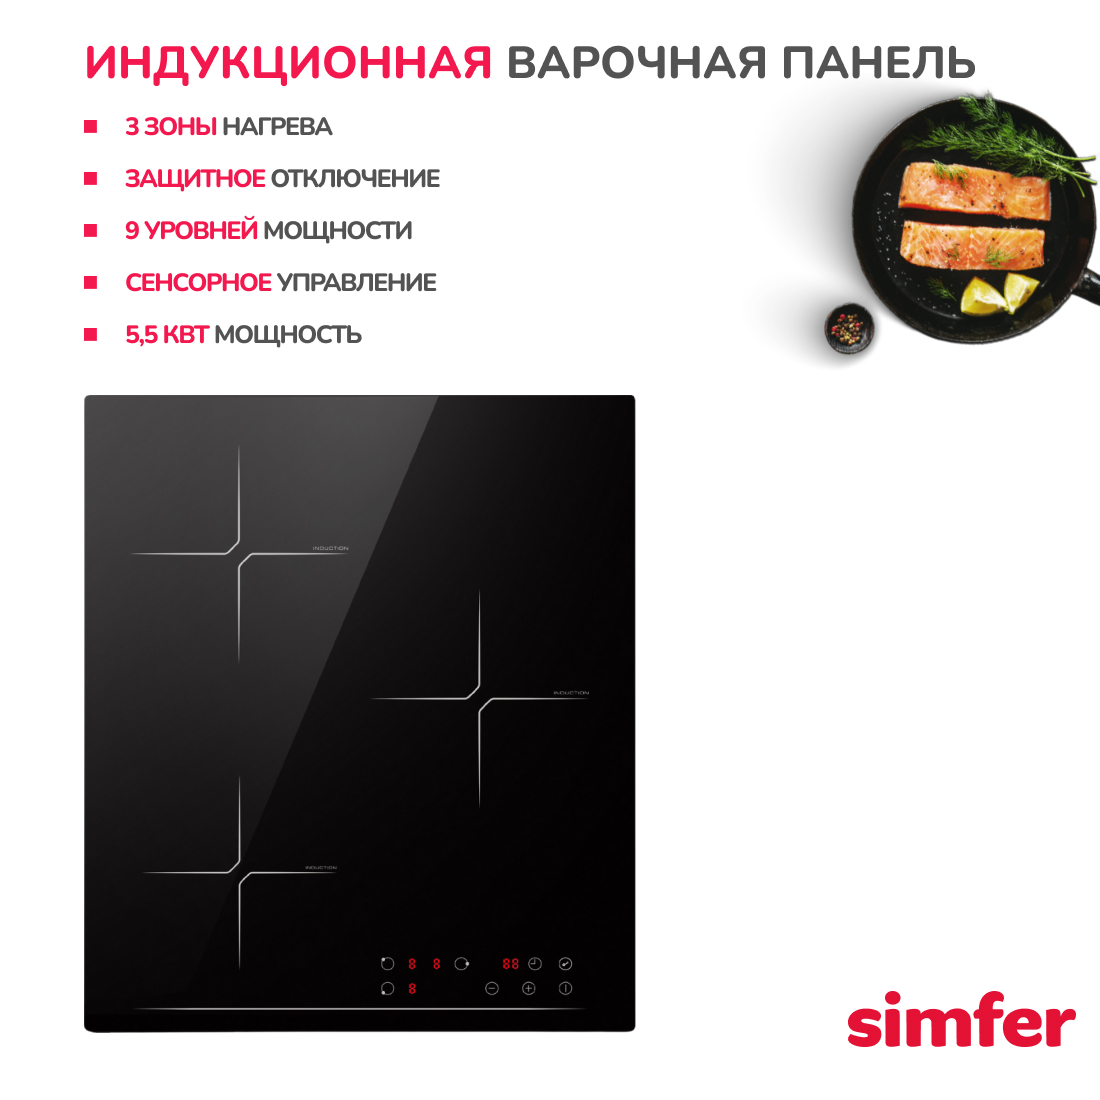 Индукционная варочная панель встраиваемая Simfer H45I73S070, цвет черный - фото 2